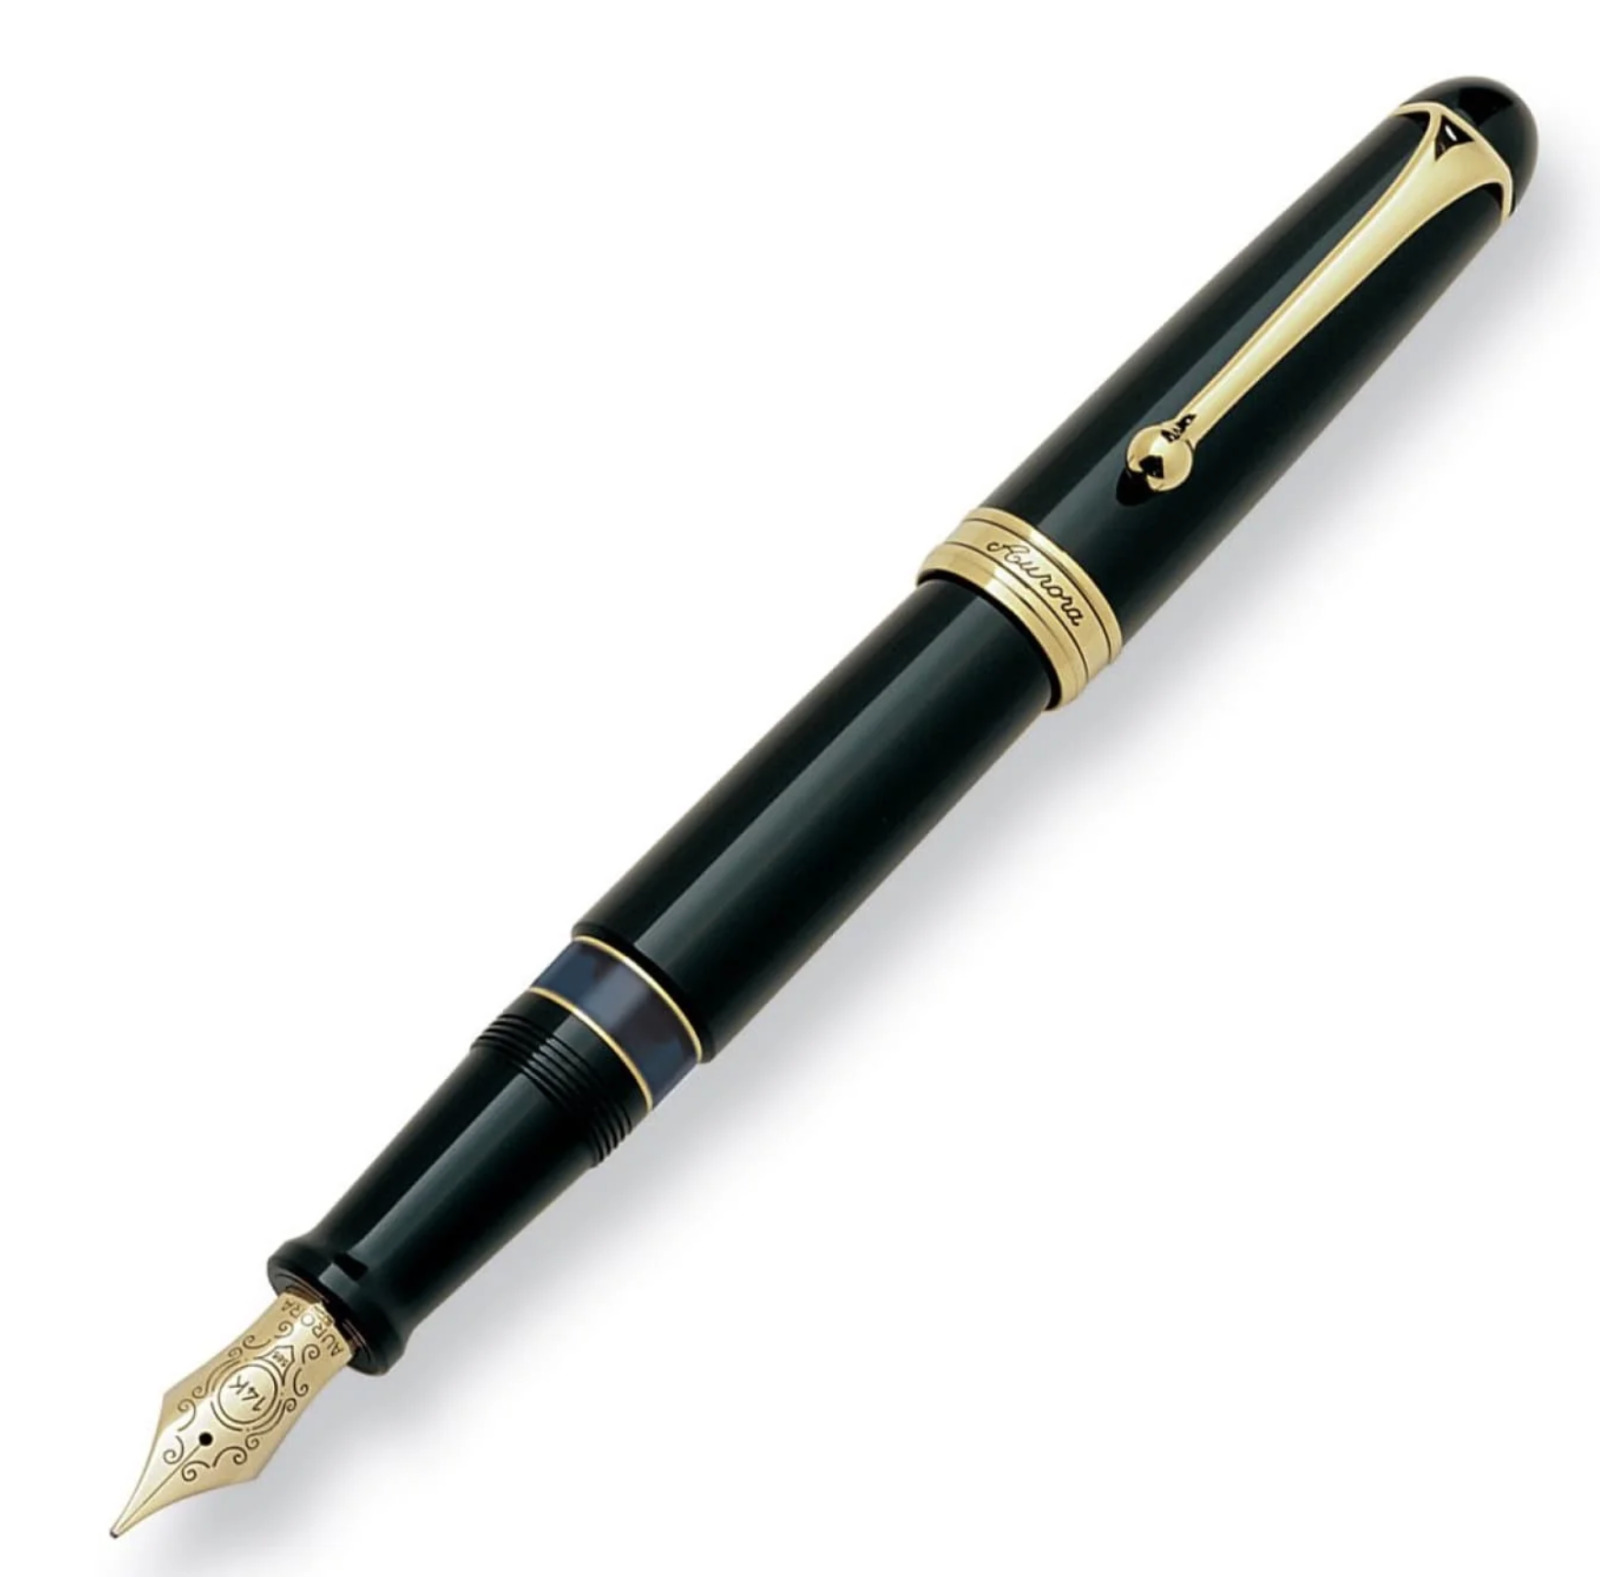 Aurora 88 800 Big Black Gold Trim Fountain Pen Piston Fill 14k Fine Nib $550 MSR